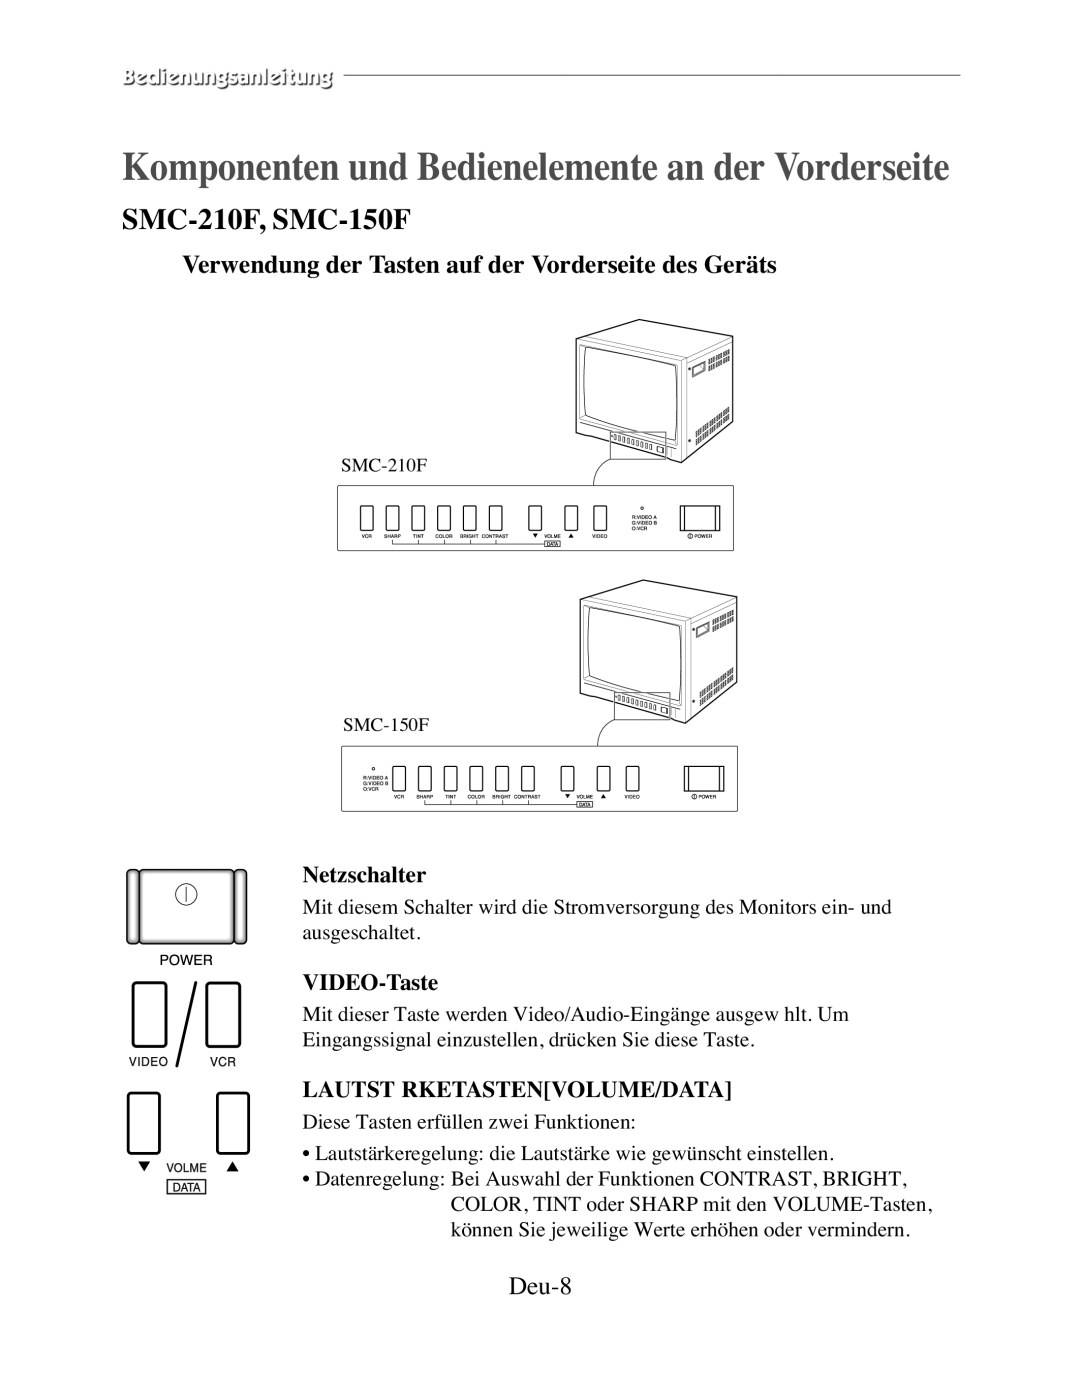 Samsung SMC-210FP Komponenten und Bedienelemente an der Vorderseite, Verwendung der Tasten auf der Vorderseite des Geräts 